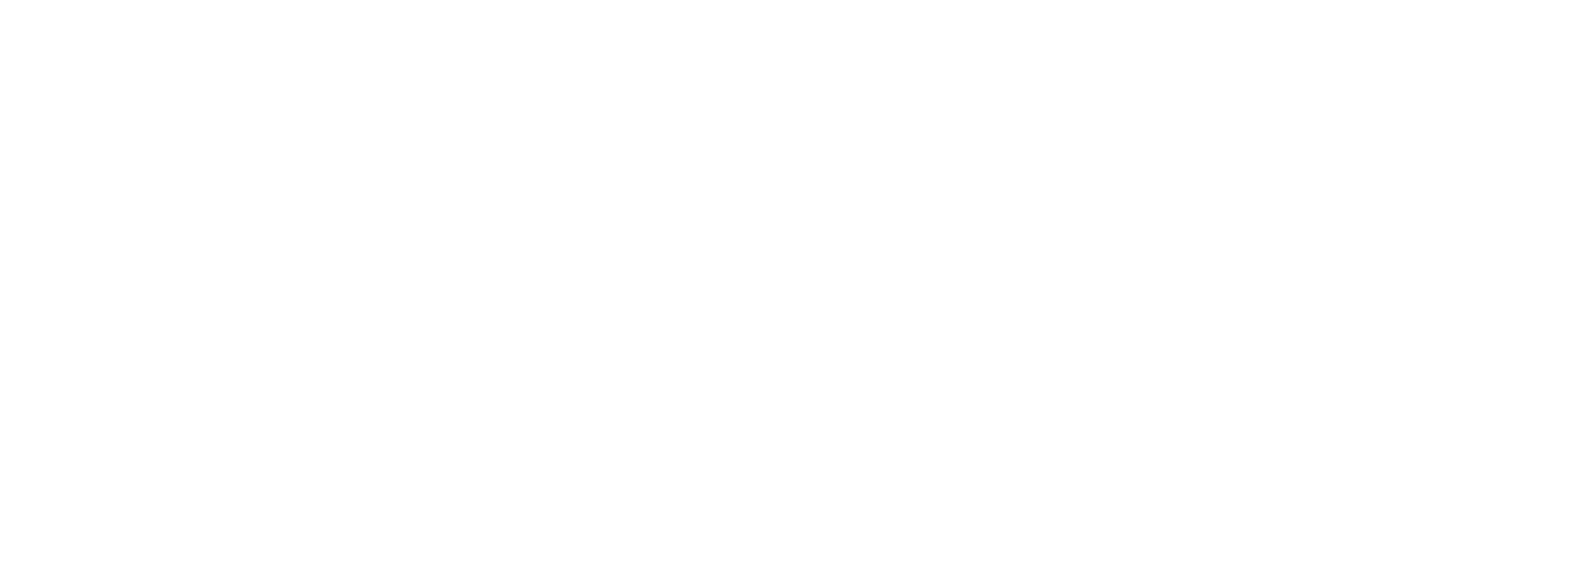 Jerónimo Martins
 logo large for dark backgrounds (transparent PNG)